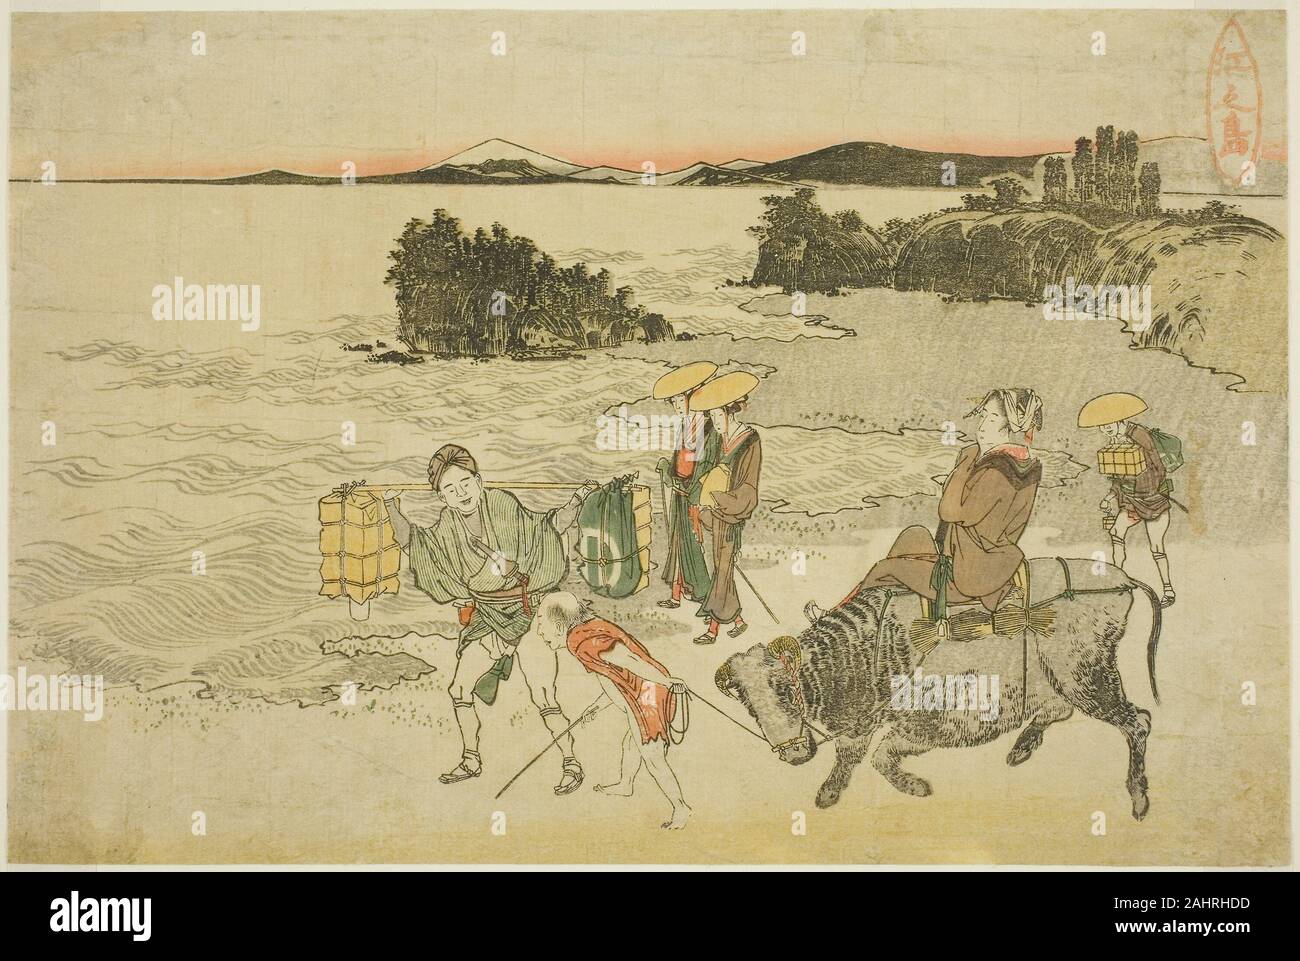 Katsushika Hokusai. Enoshima. 1760-1849. Le Japon. Gravure sur bois en couleur Banque D'Images